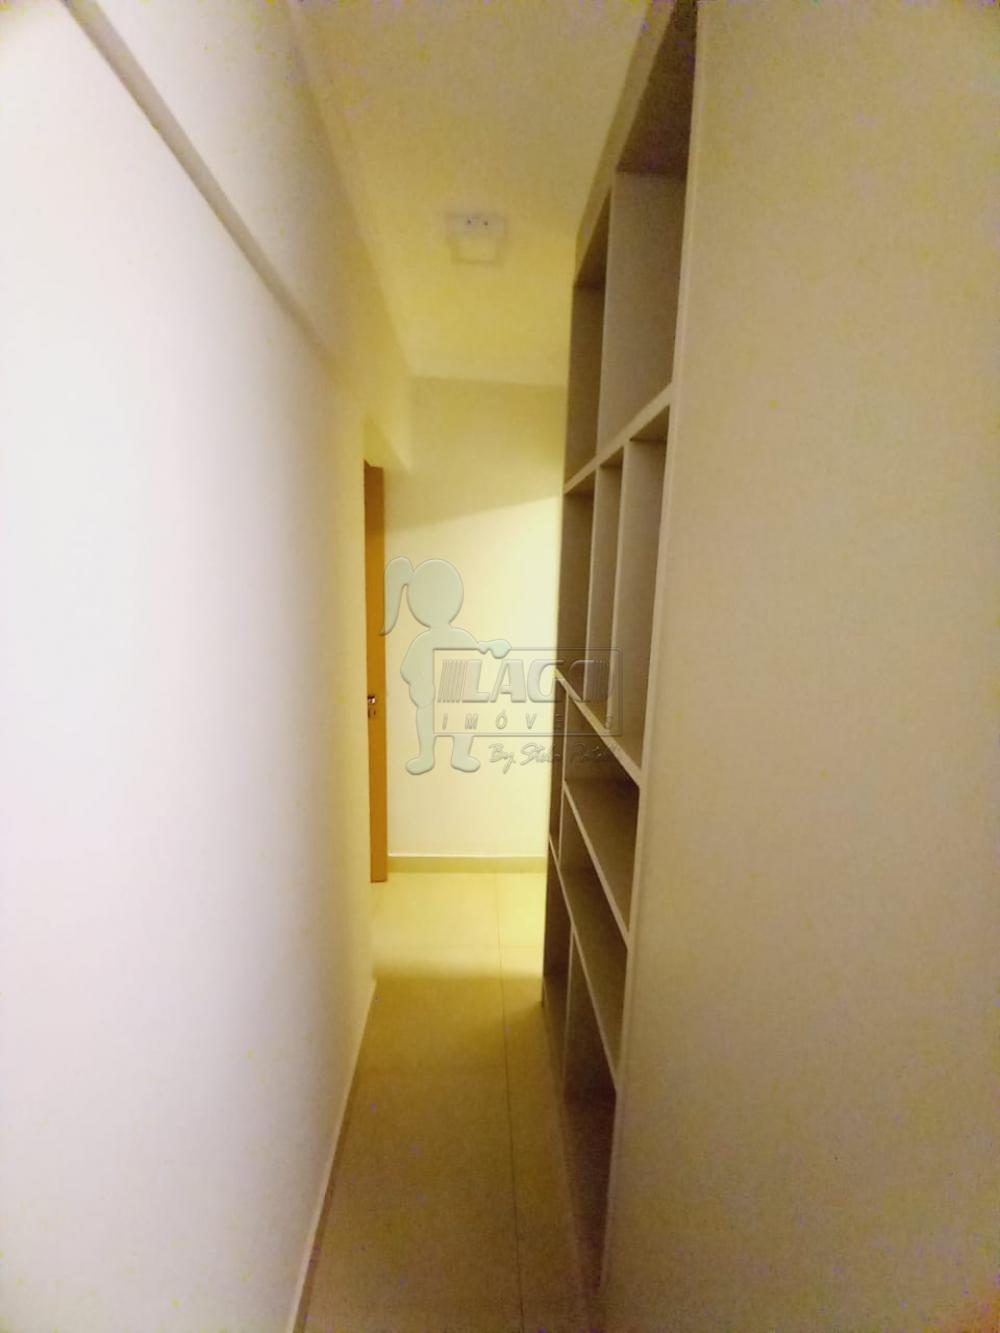 Alugar Apartamentos / Padrão em Ribeirão Preto R$ 4.000,00 - Foto 8